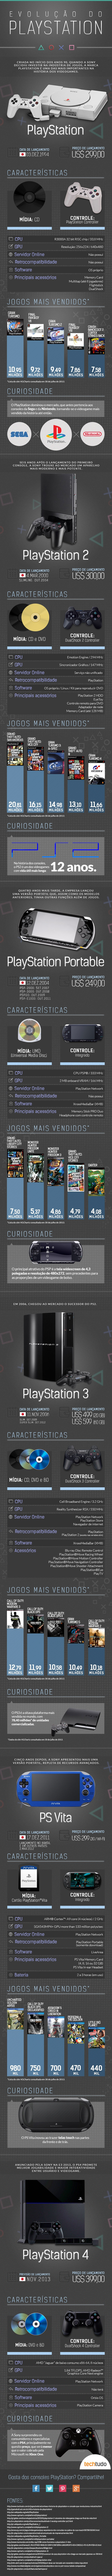 Infográfico: confira algumas curiosidades sobre a Playstation Plus